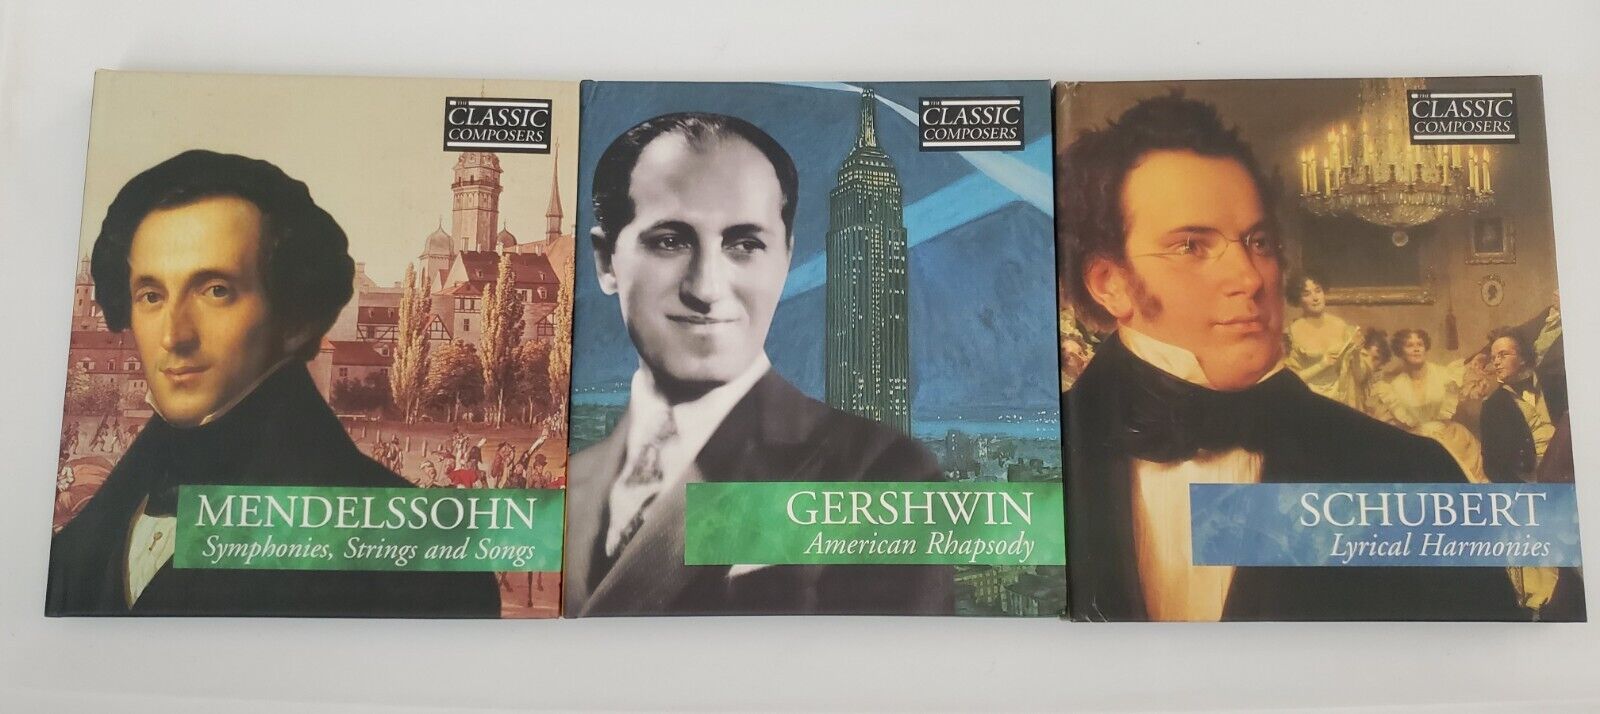 The Classic Composer 3 Disc Box Mendelssohn Schubert Gershwin